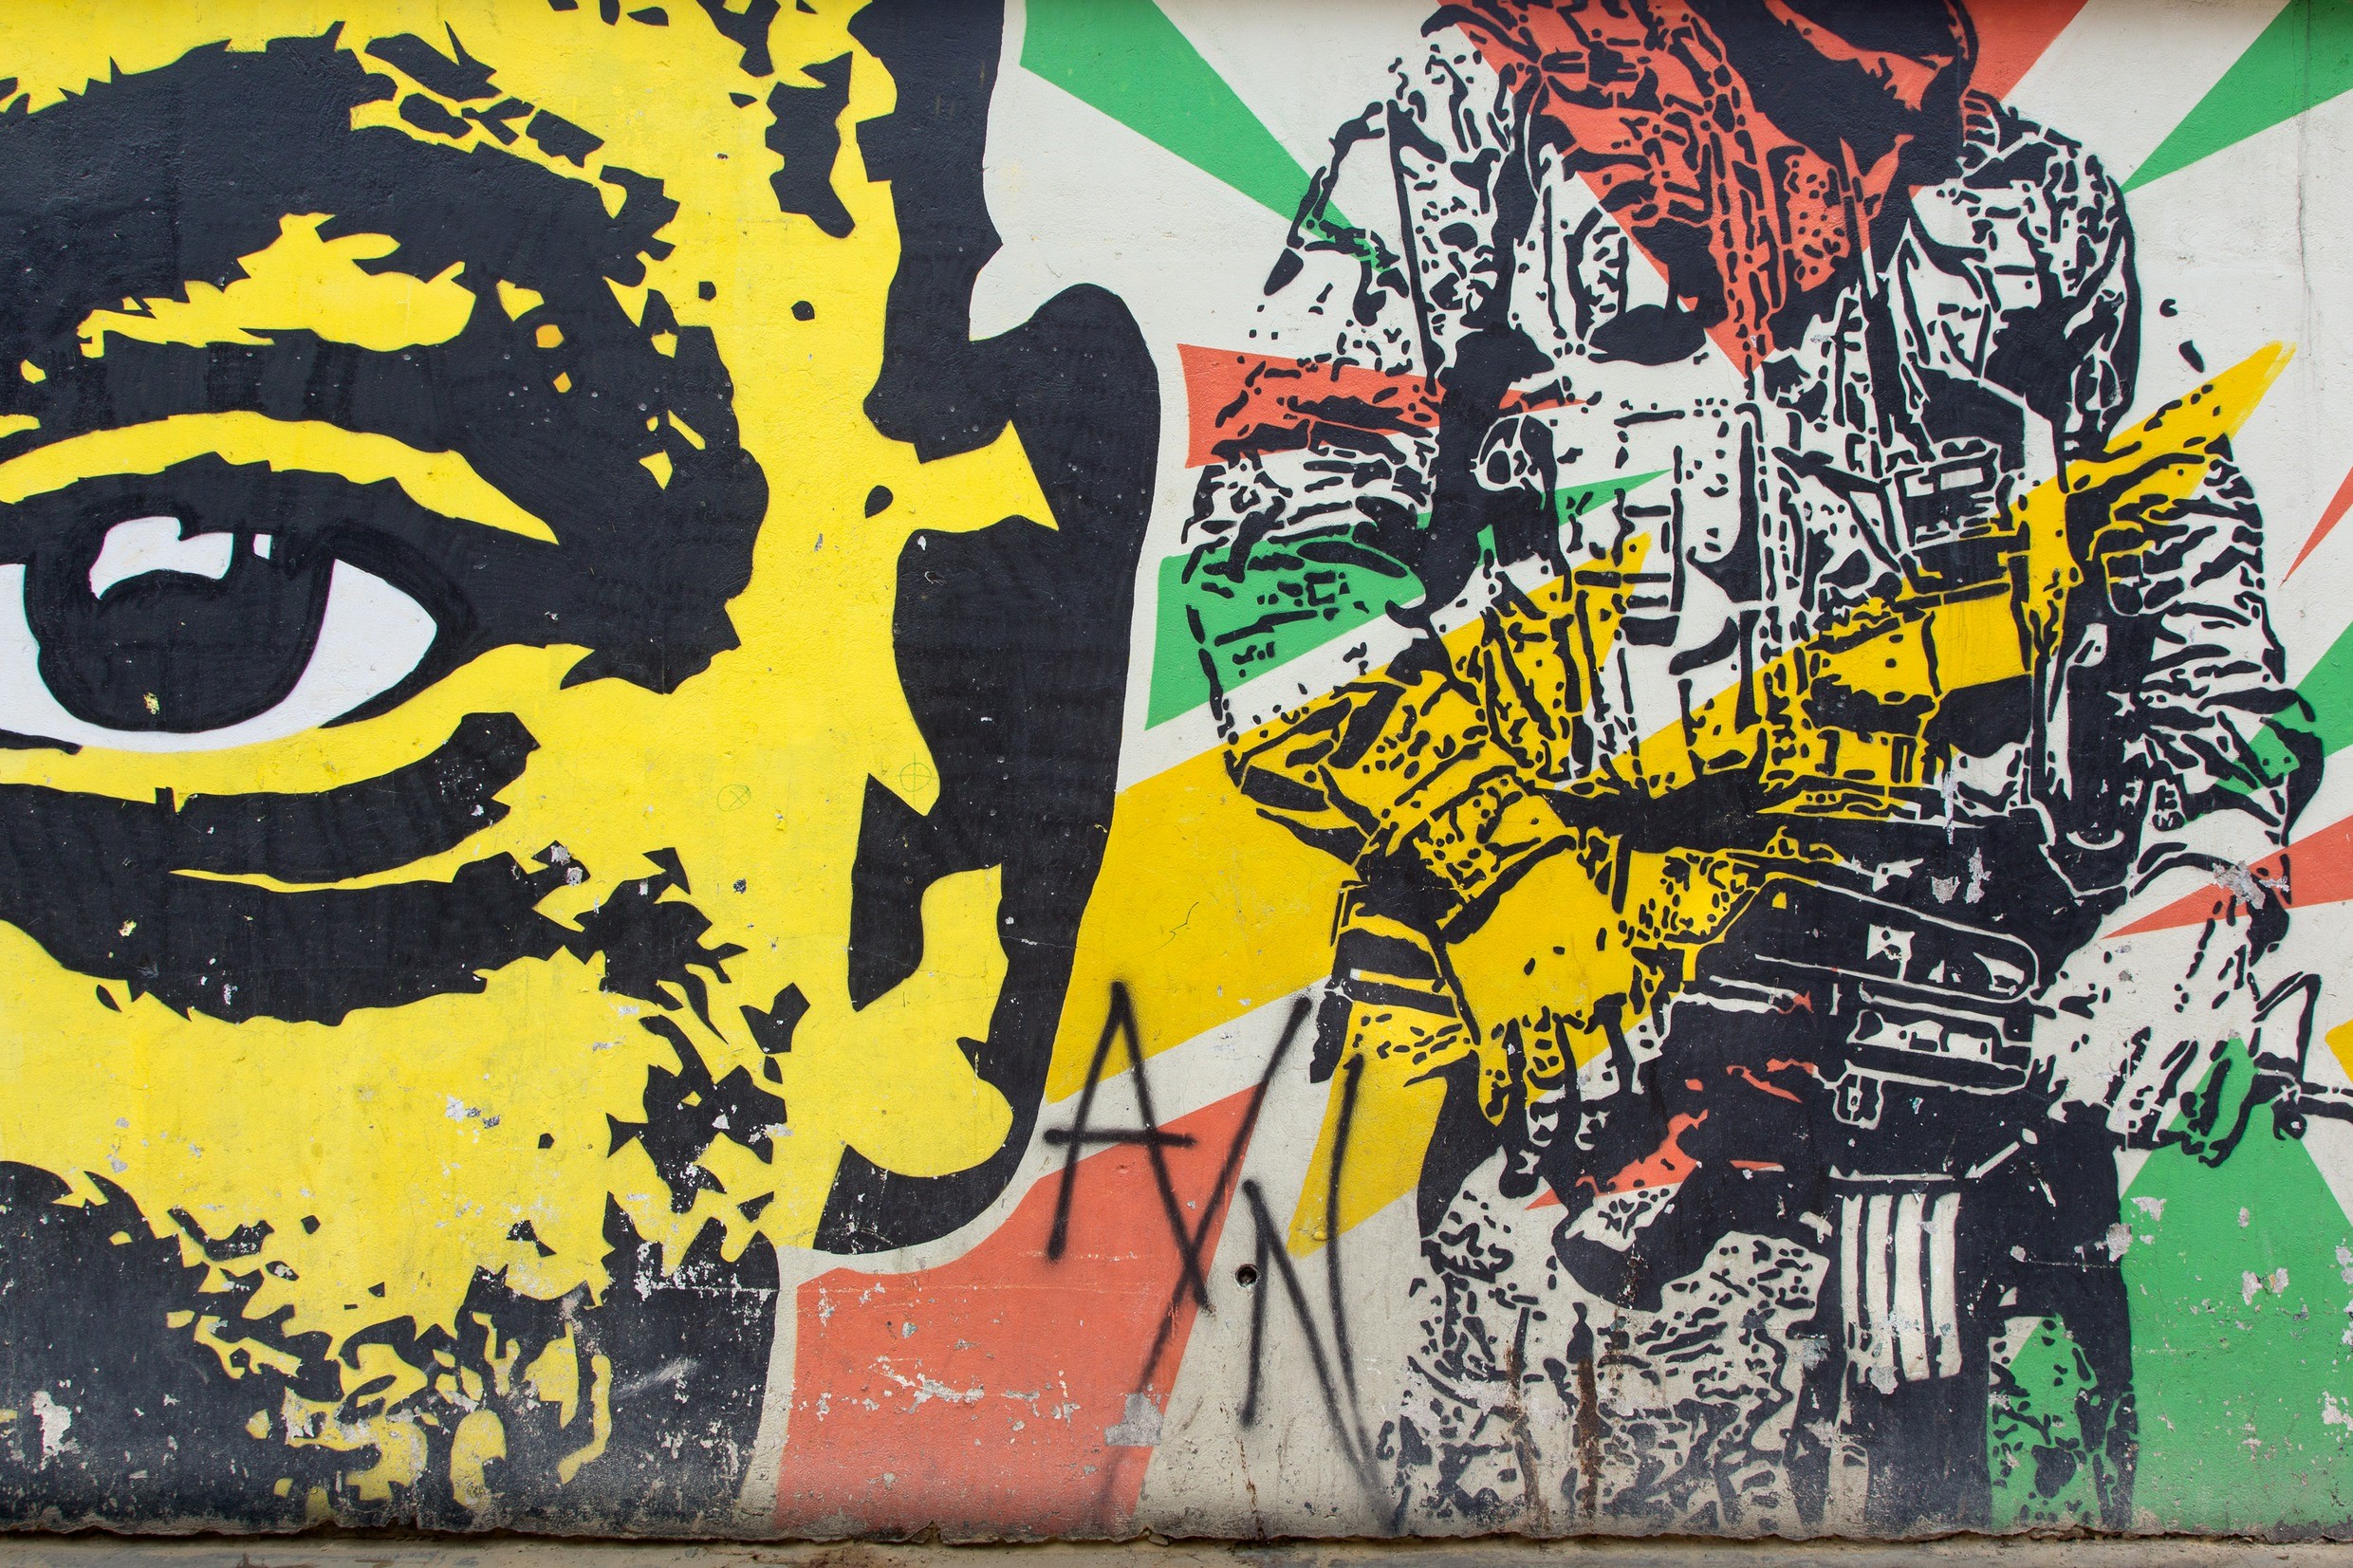 Wandmalerei gegen Gewalt in Kolumbiens Hauptstadt Bogotá. Foto: Adveniat/Jürgen Escher